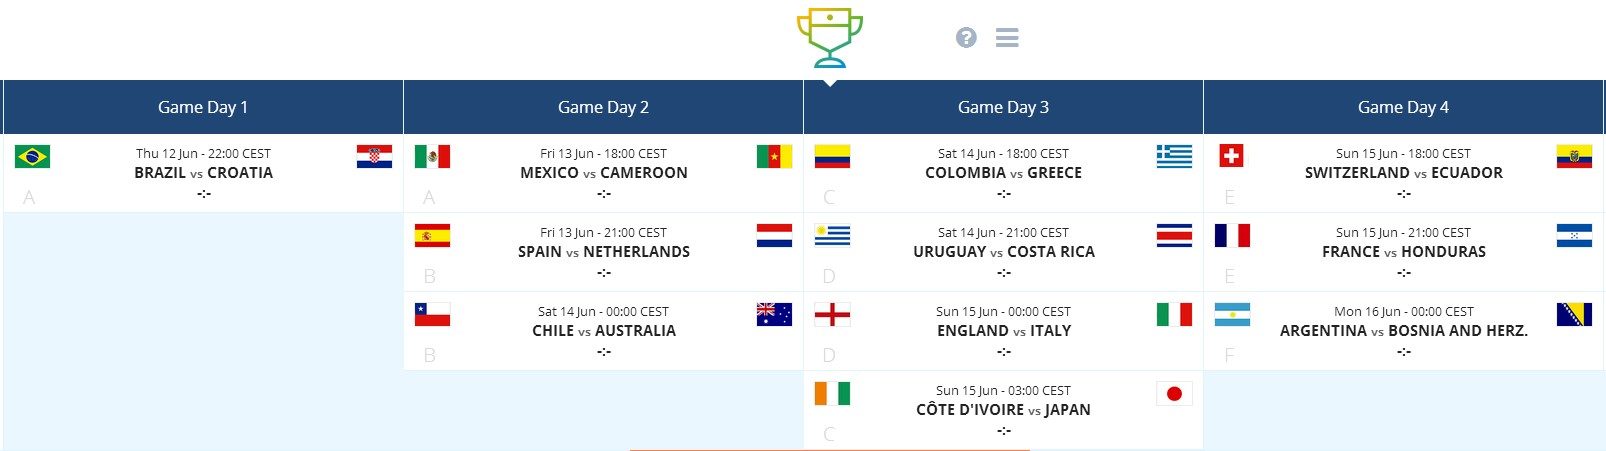 Pocket World Cup Schedule